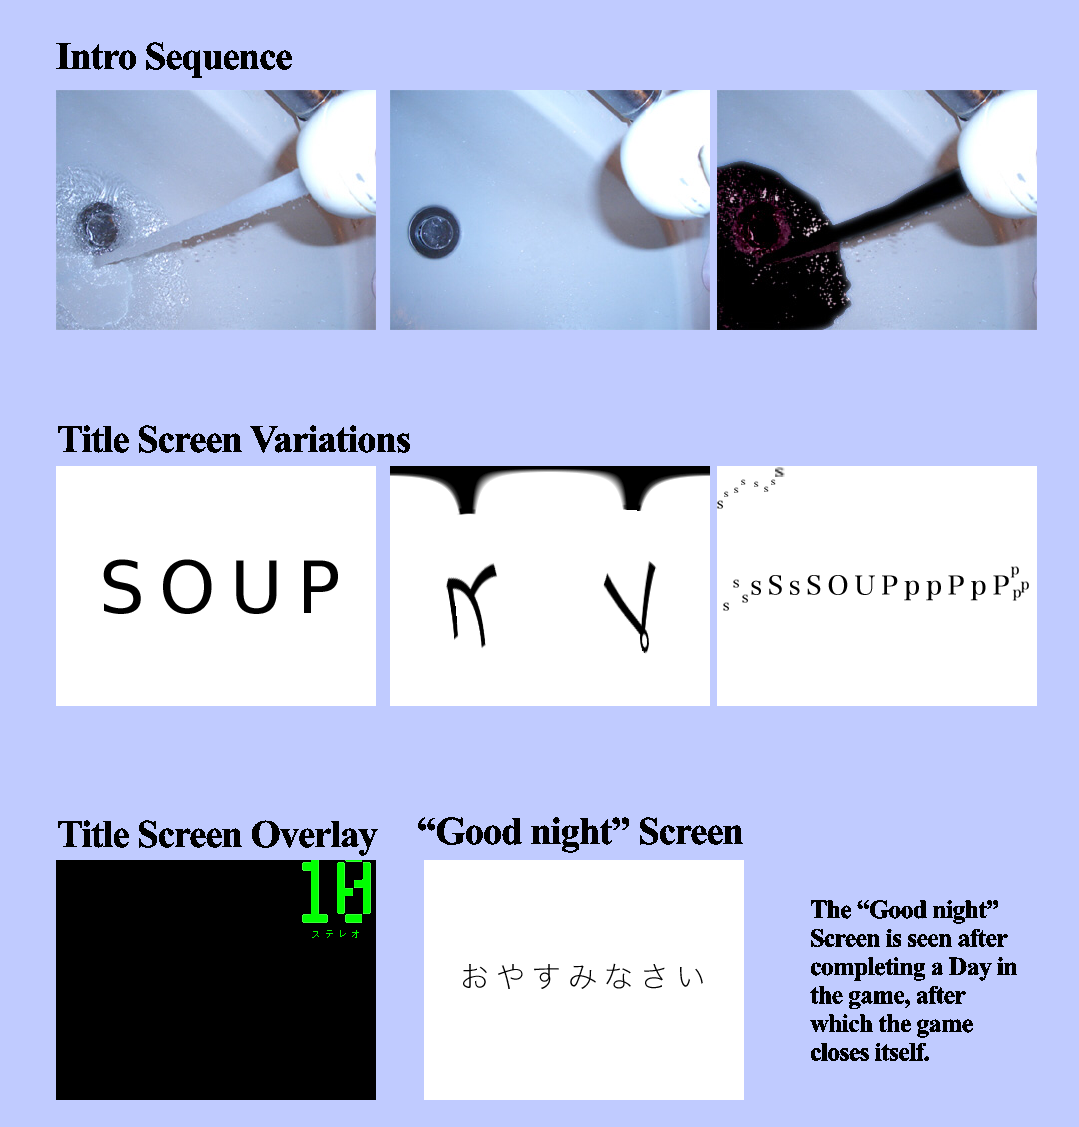 Soup 0.9 - Title Screen